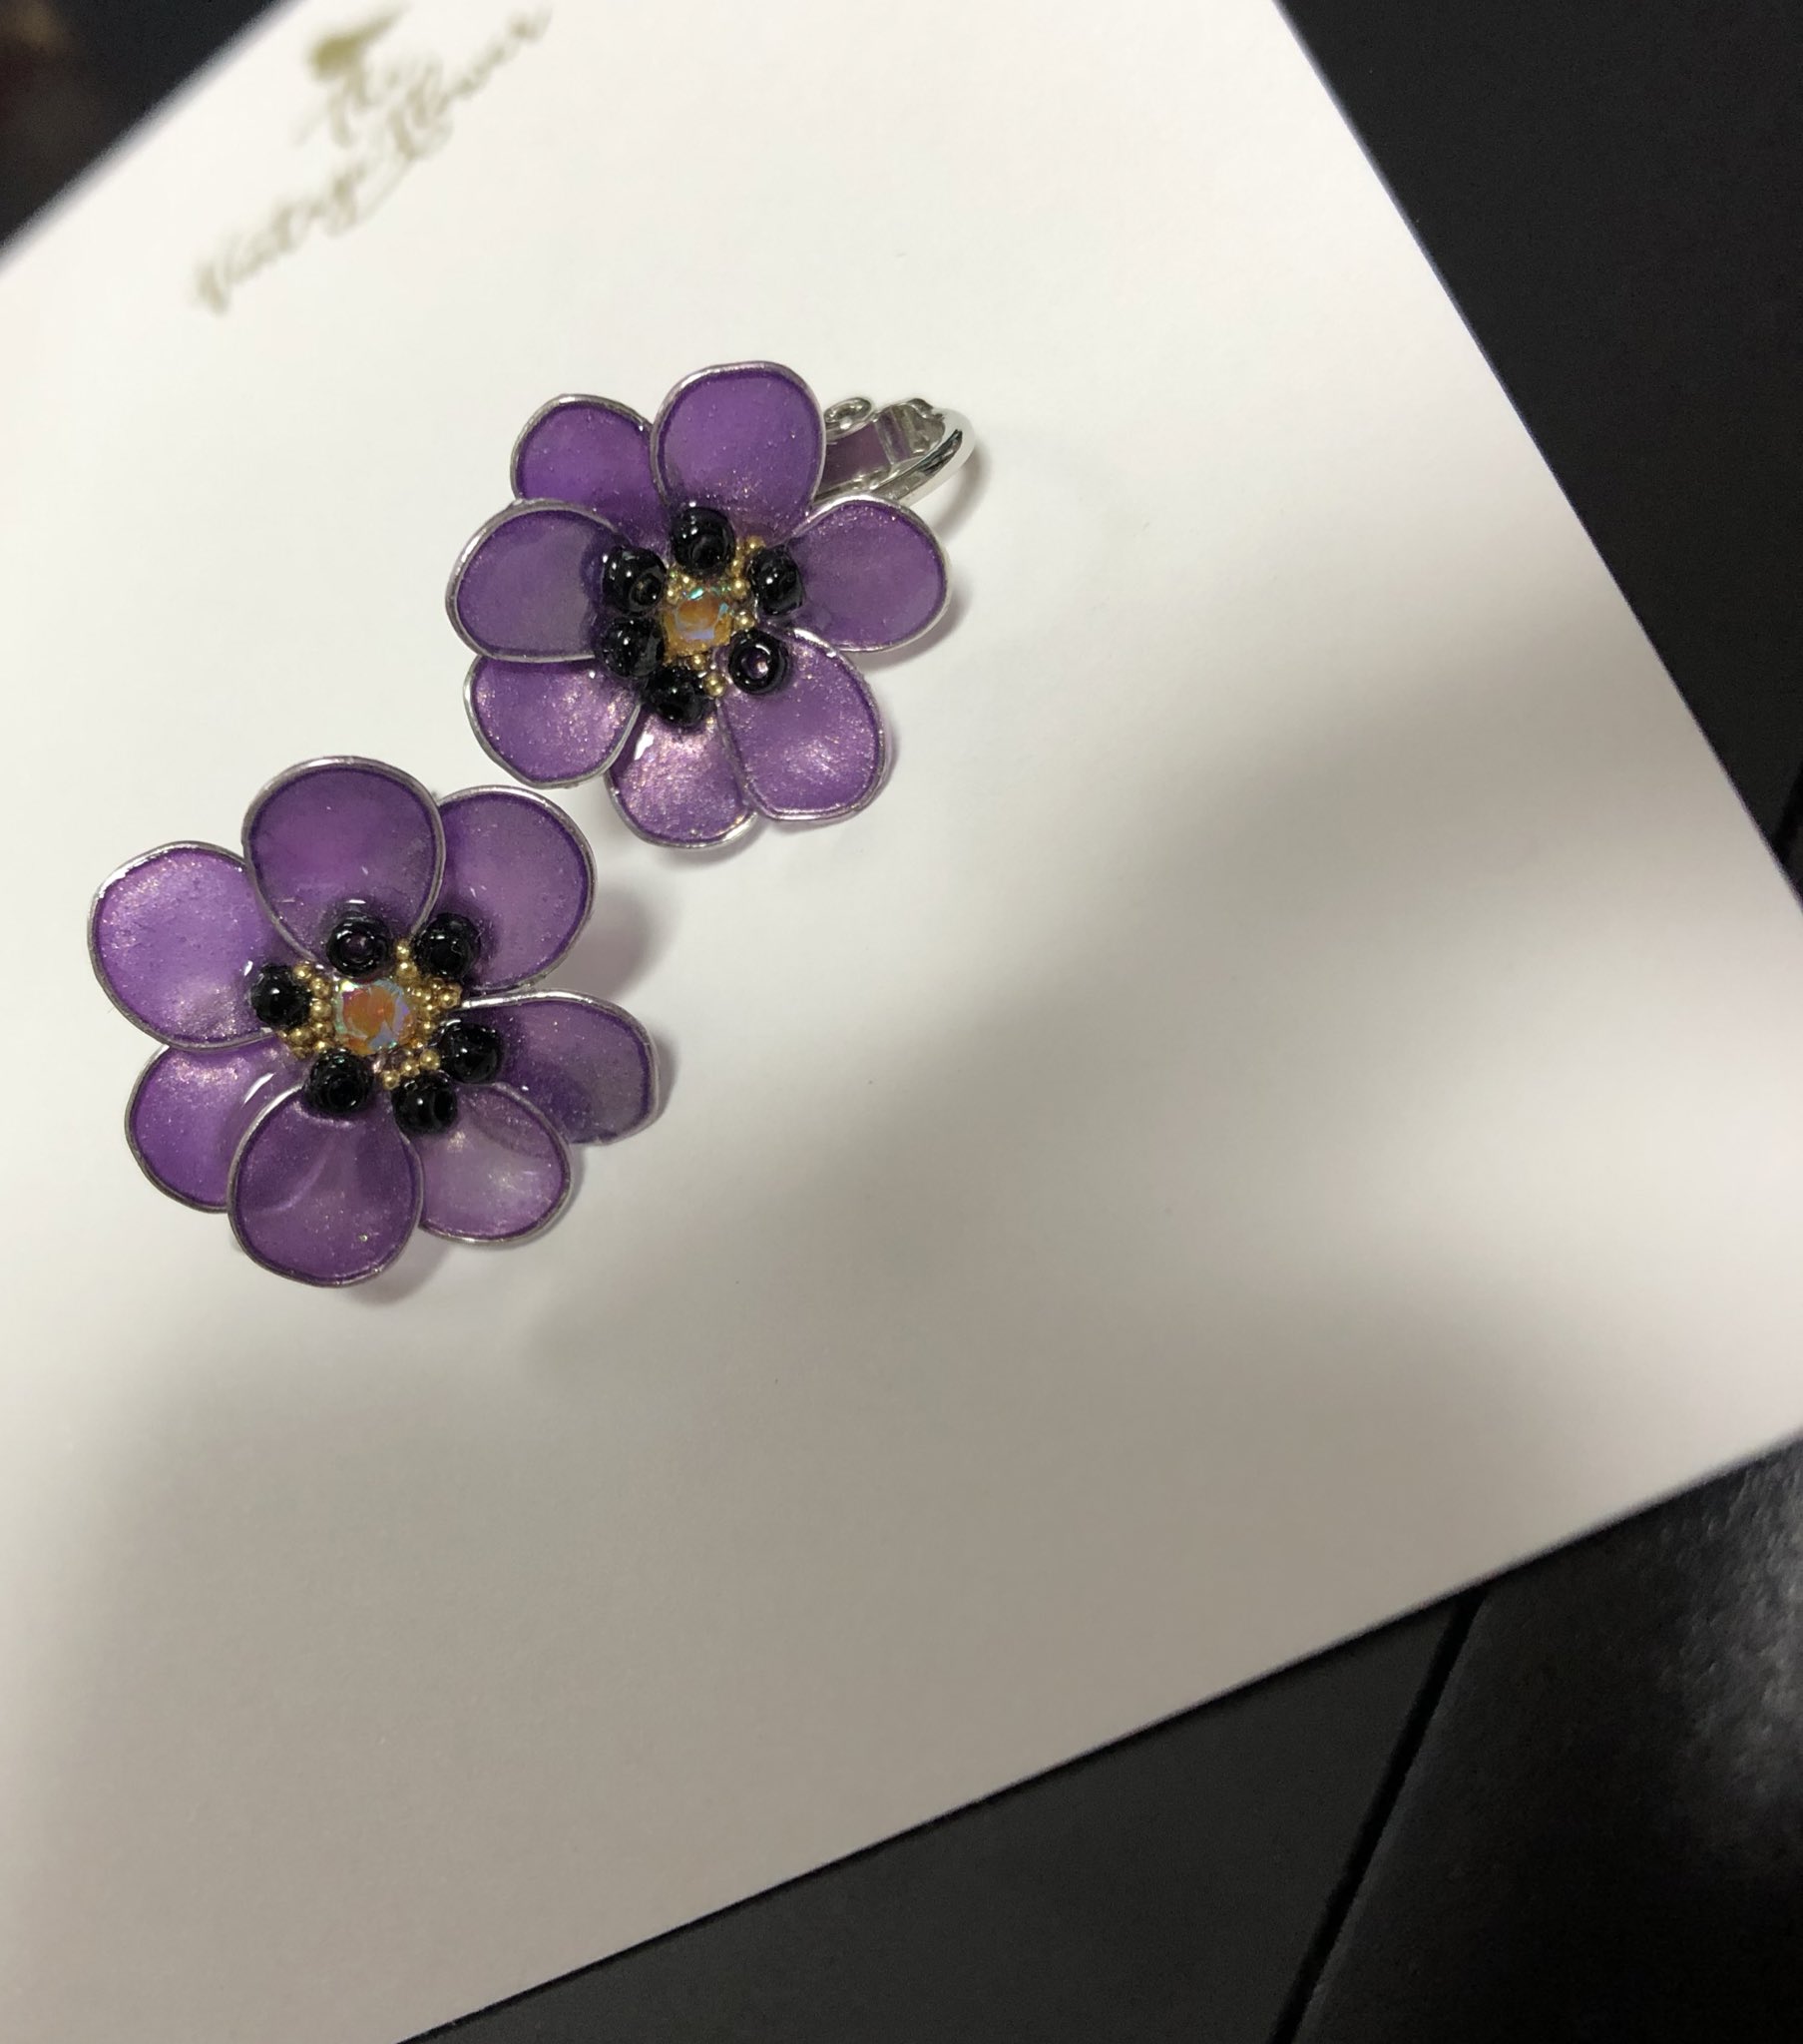 桜井原稿しろ 紫アネモネのイヤリングをお迎えしたのです 写真一切の加工なしでこの発色 T Co A5zk4wi2de Twitter